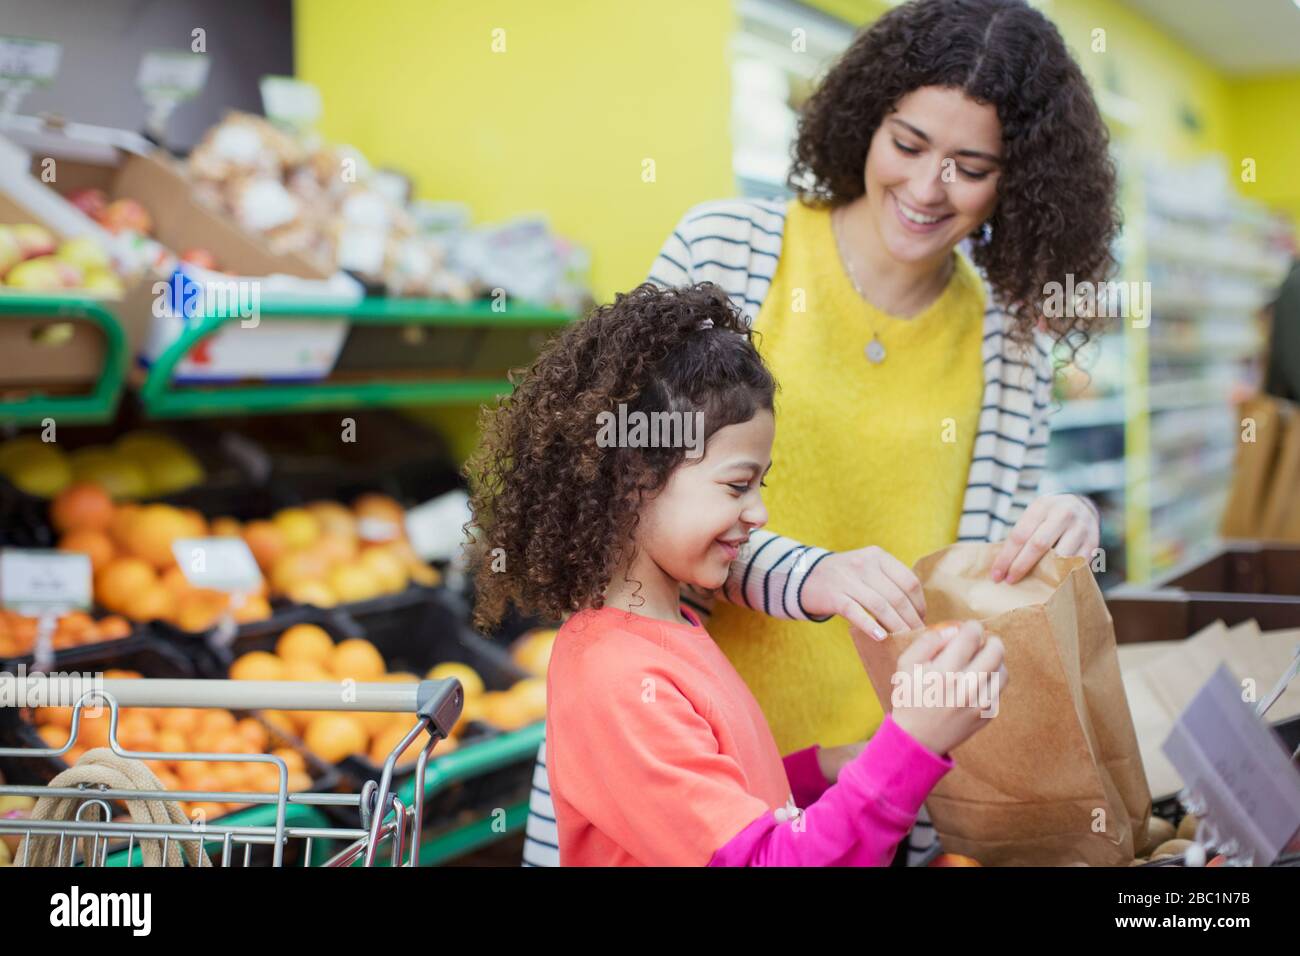 Mutter und Tochter kaufen im Supermarkt nach Produkten Stockfoto